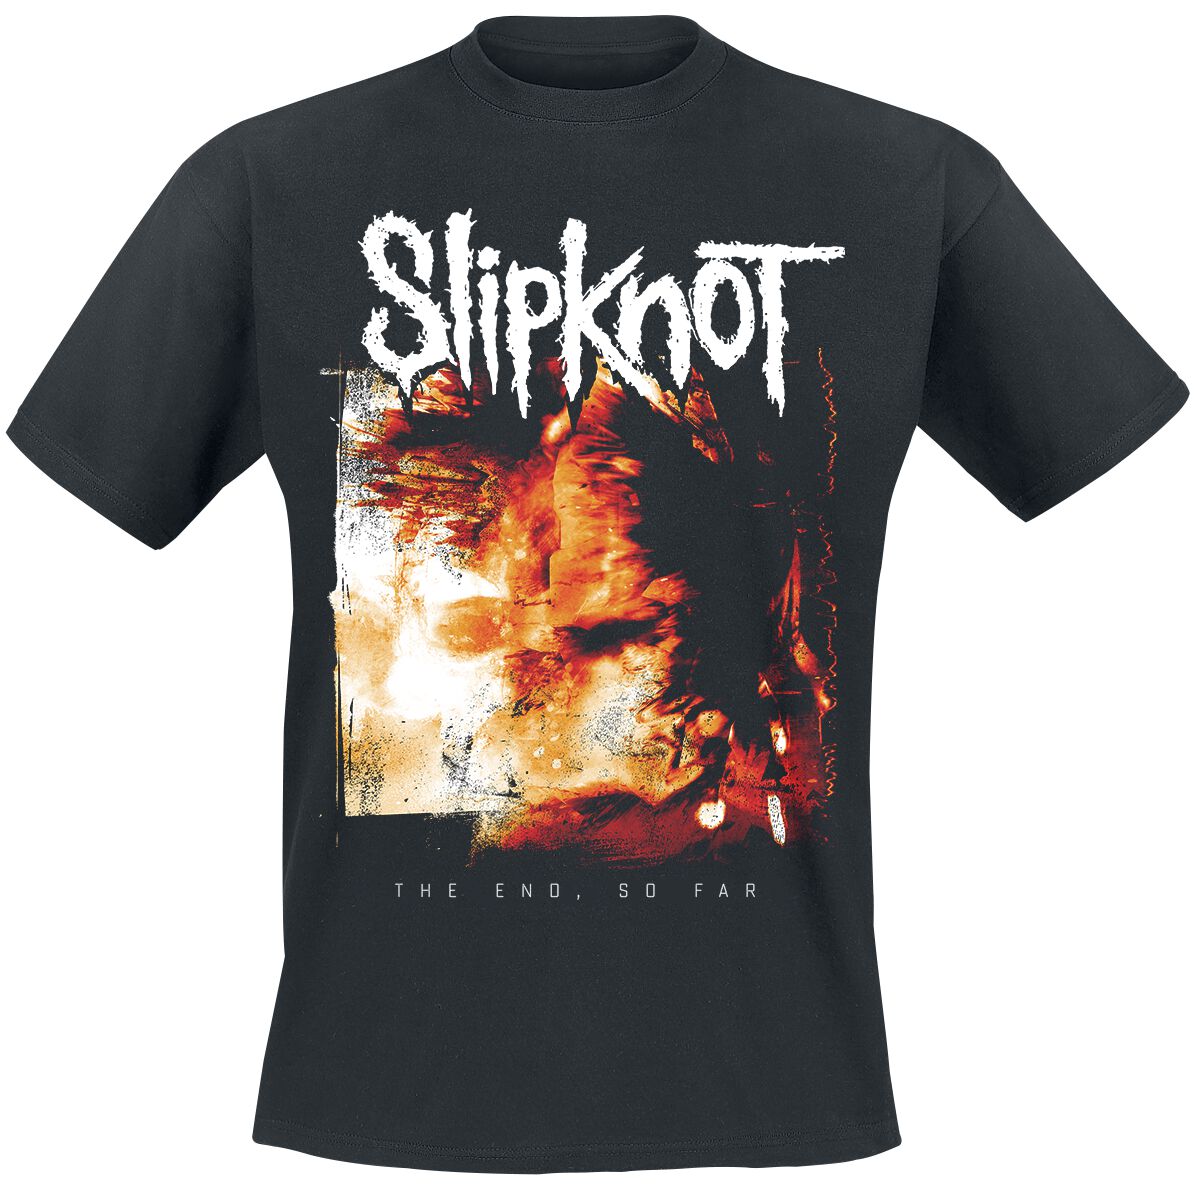 Slipknot T-Shirt - The End, So Far Cover - S bis 3XL - für Männer - Größe S - schwarz  - Lizenziertes Merchandise!